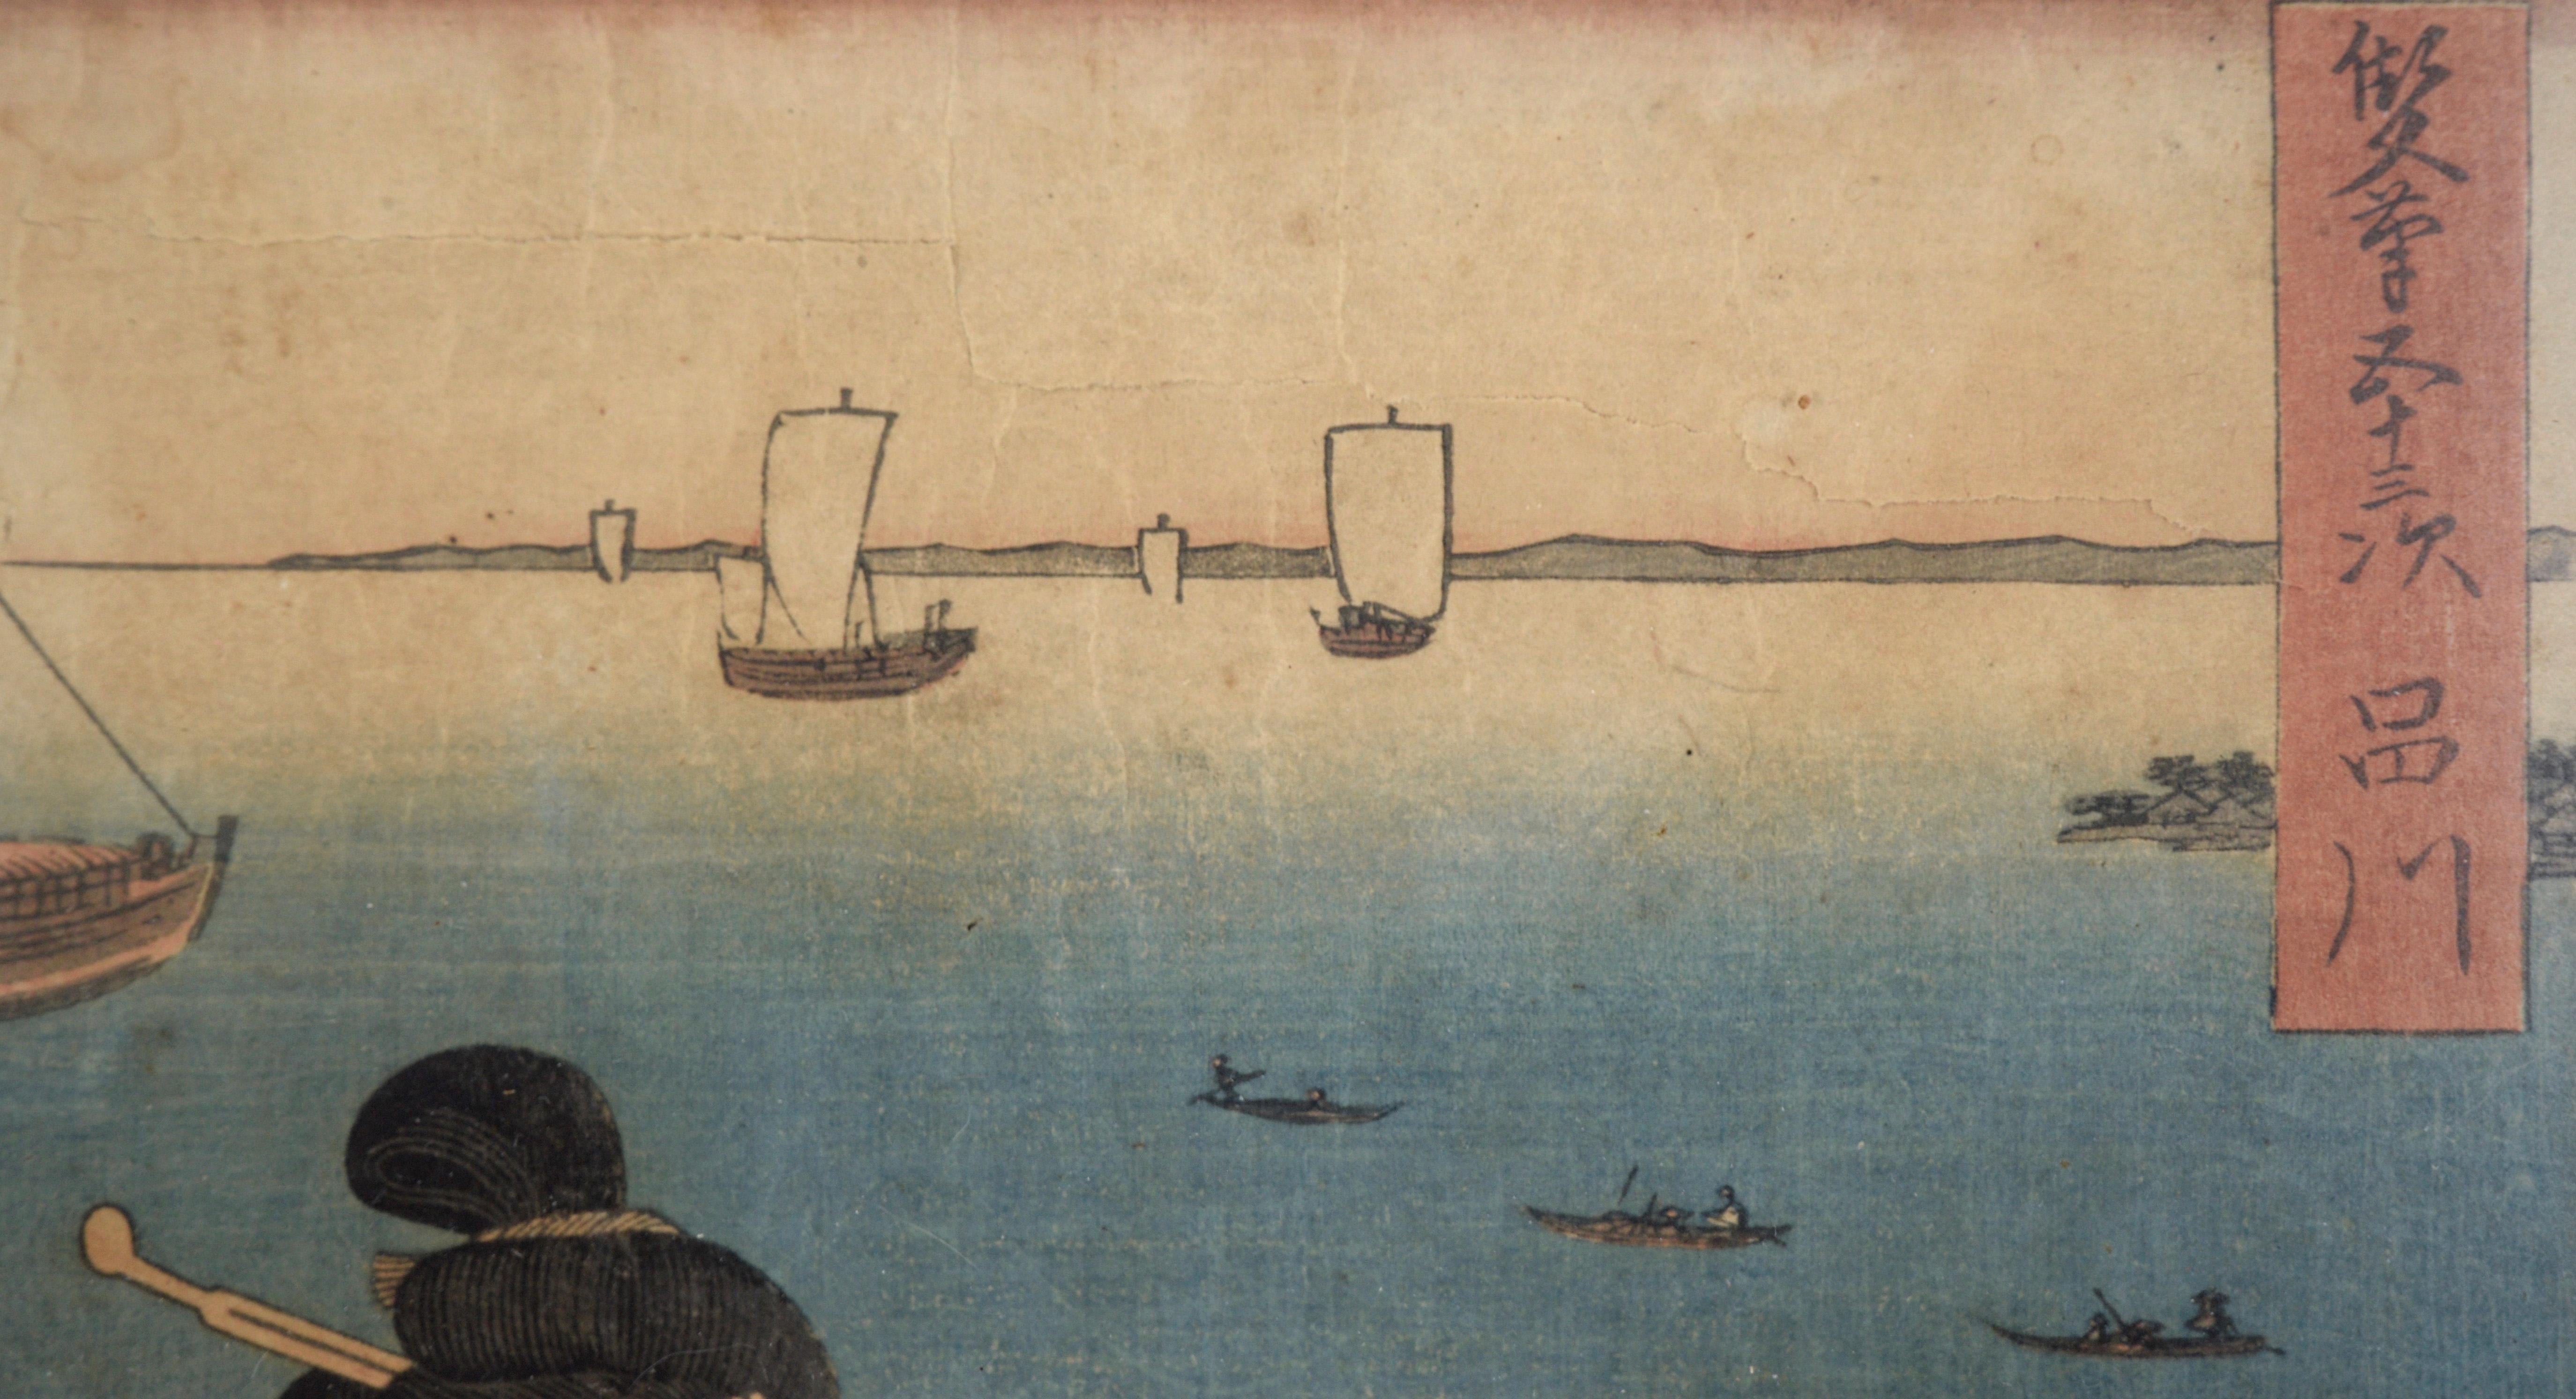 53 Stationen des Tokaido-Schminkzimmers – Holzschnitt von Utagawa Hiroshige und Kunisada

Eleganter Farbholzschnitt von Utagawa Hiroshige I (Japaner, 1797-1858) und Utagawa Kunisada I (Toyokuni III) (Japaner, 1786-1864). In dieser Serie sind die